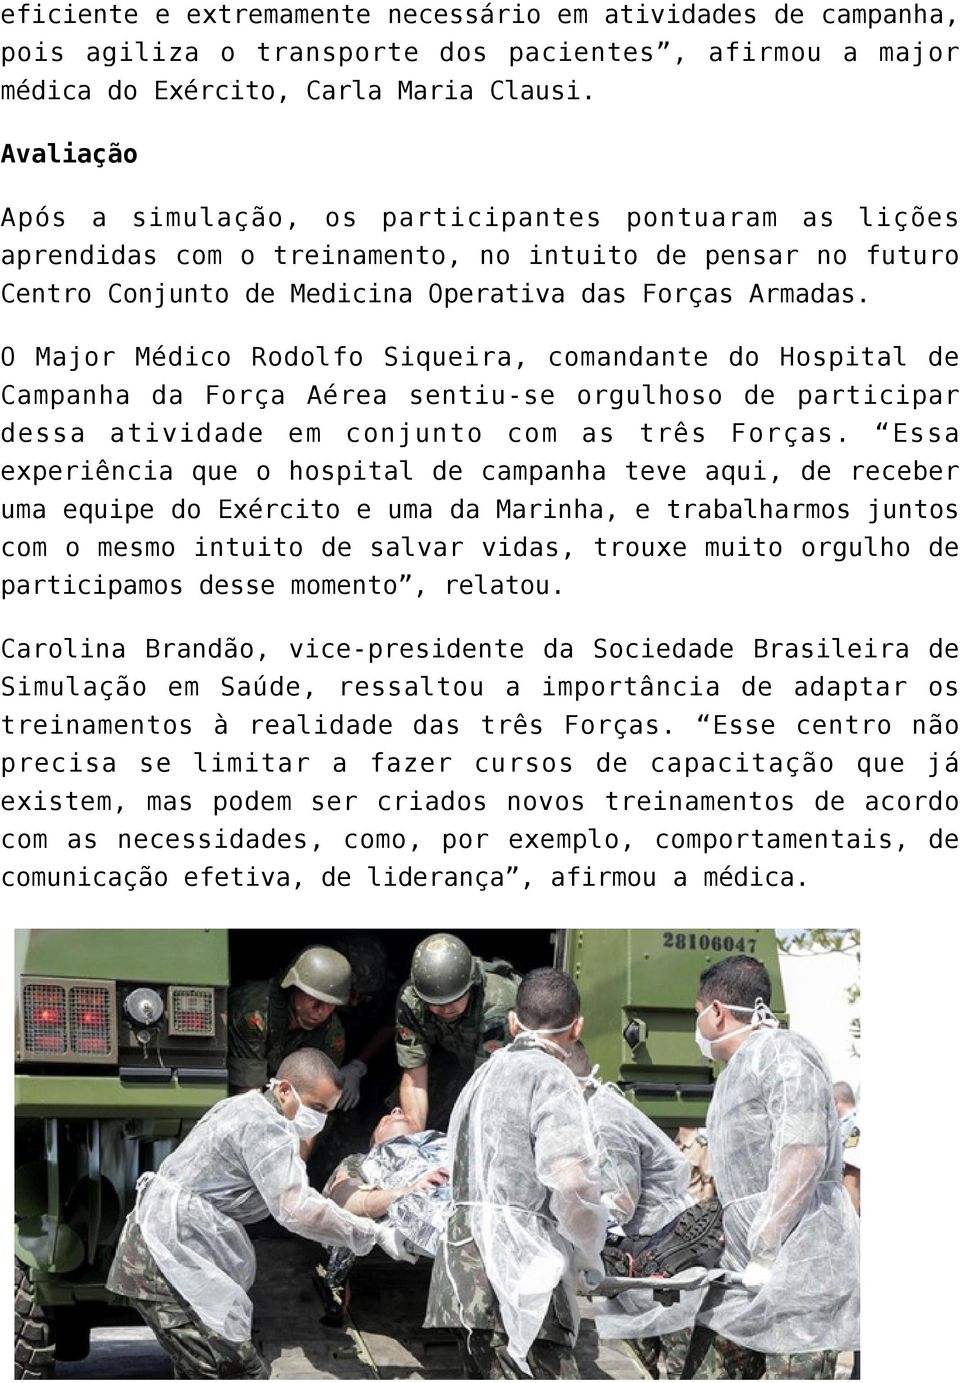 O Major Médico Rodolfo Siqueira, comandante do Hospital de Campanha da Força Aérea sentiu-se orgulhoso de participar dessa atividade em conjunto com as três Forças.